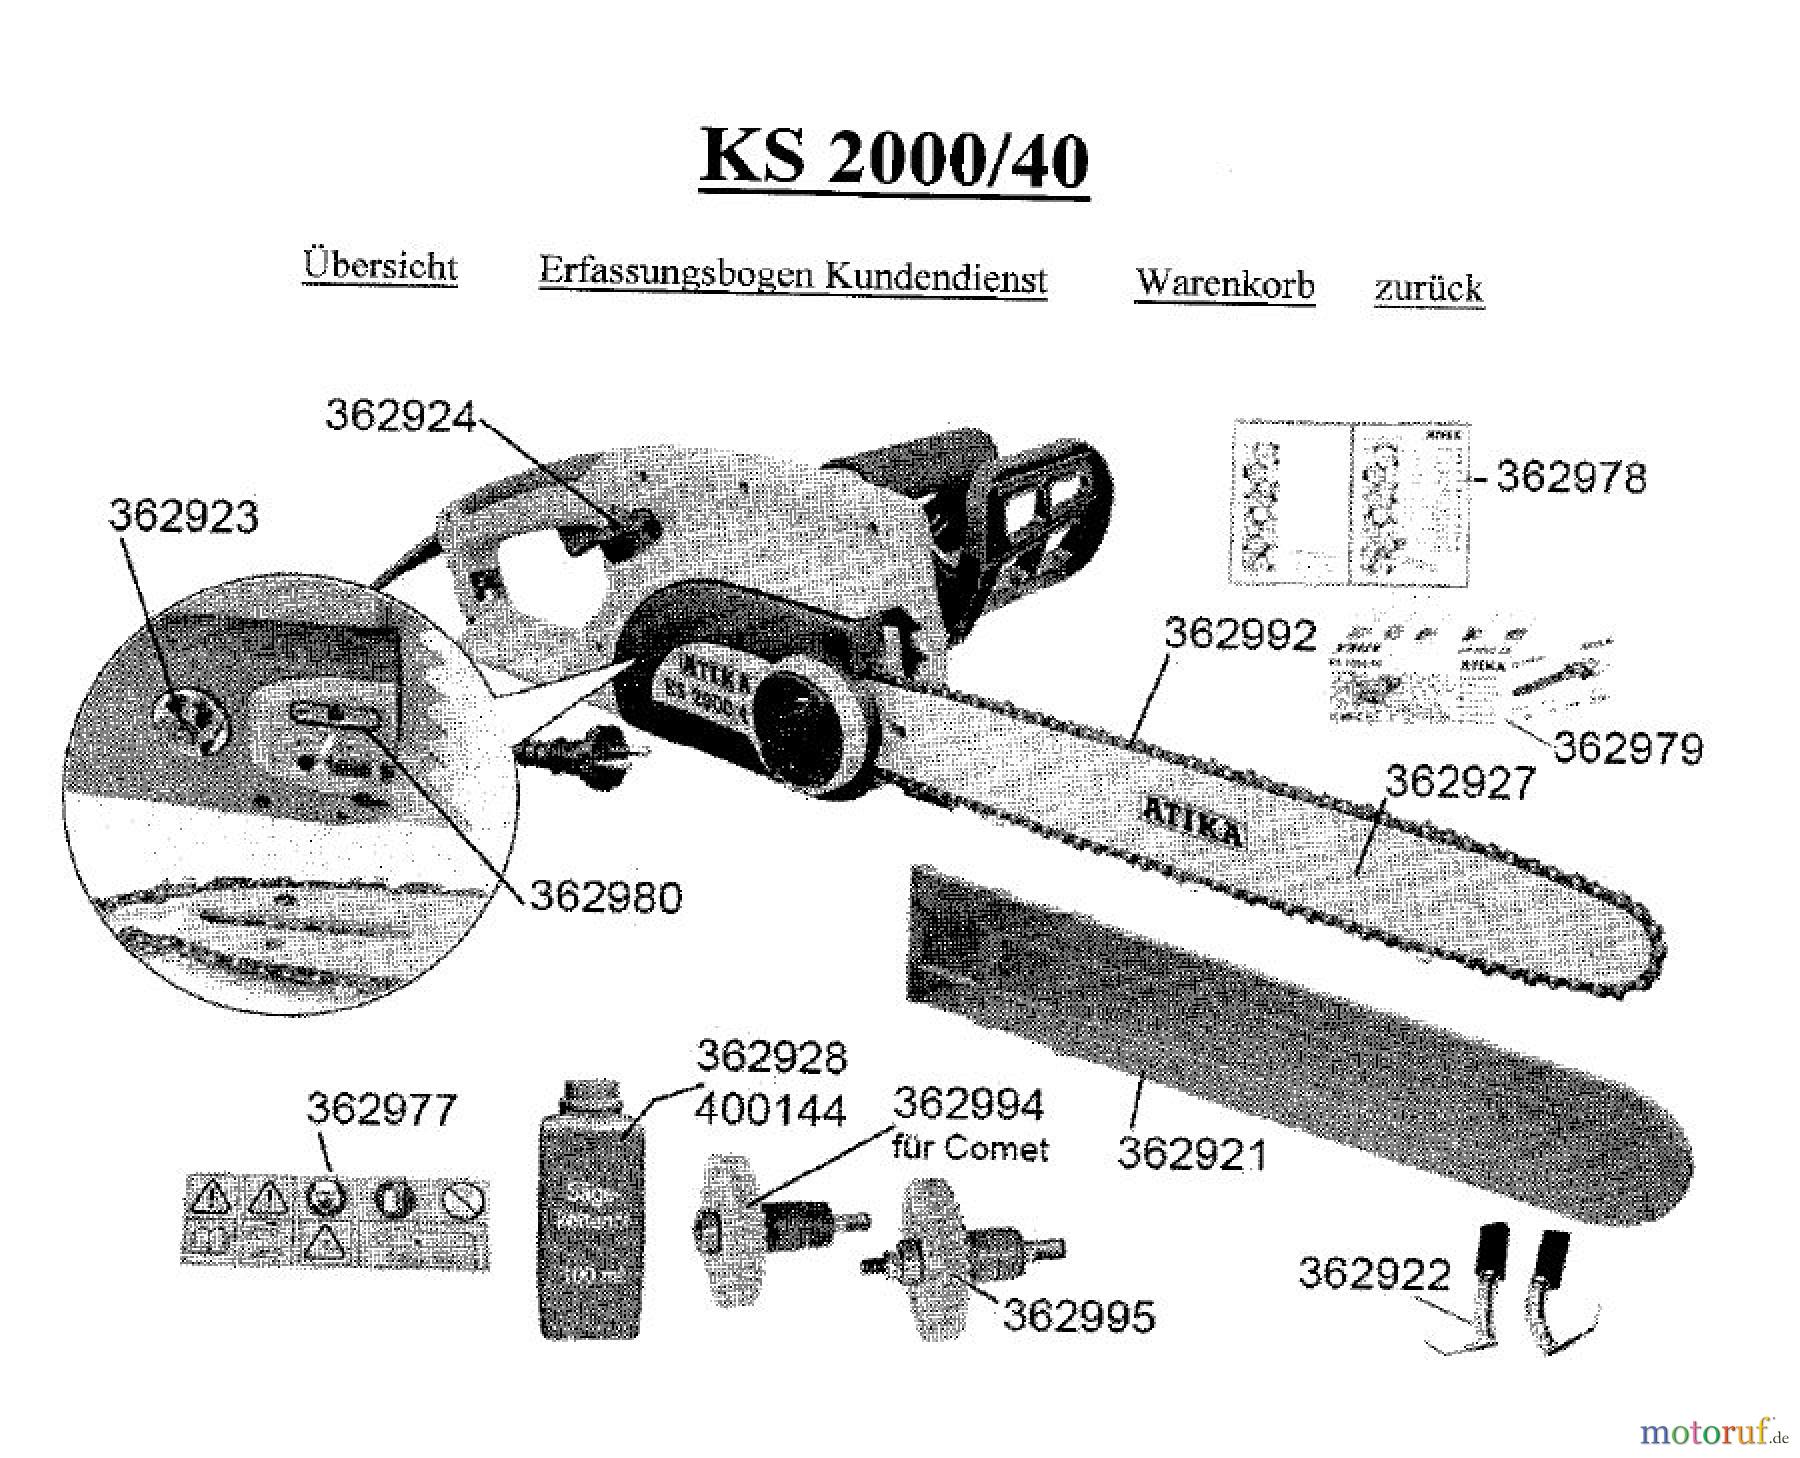  Atika Holz Kettensägen KS 2000/40